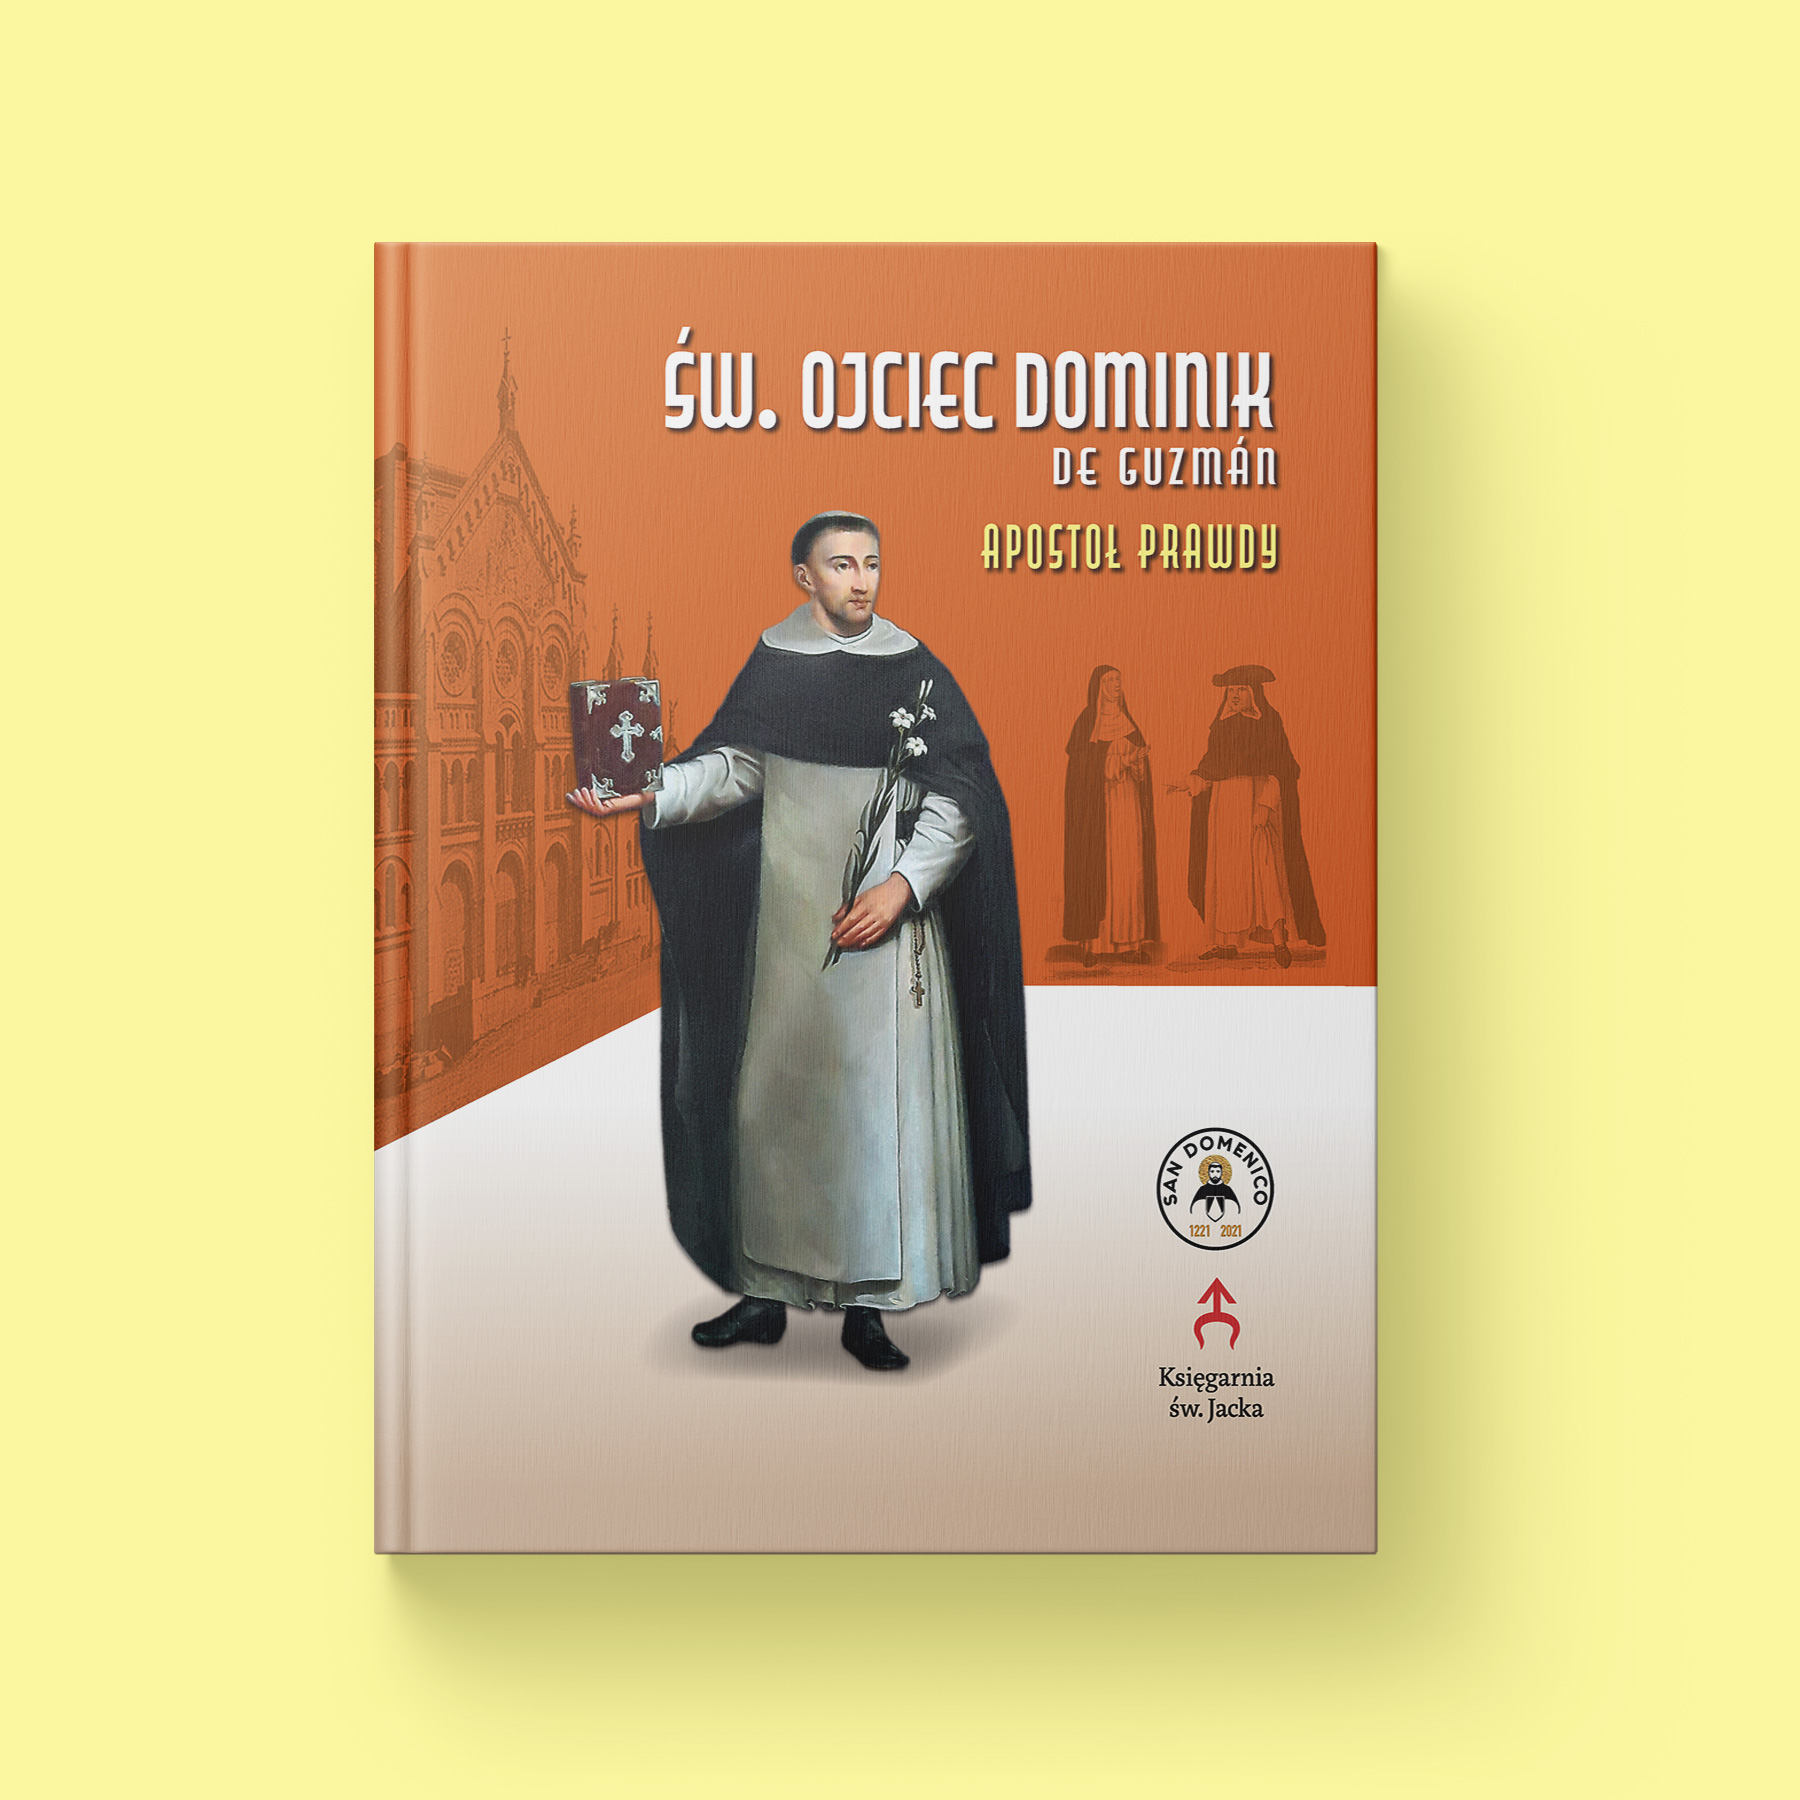 Święty Ojciec Dominik de Guzman – Apostoł Prawdy